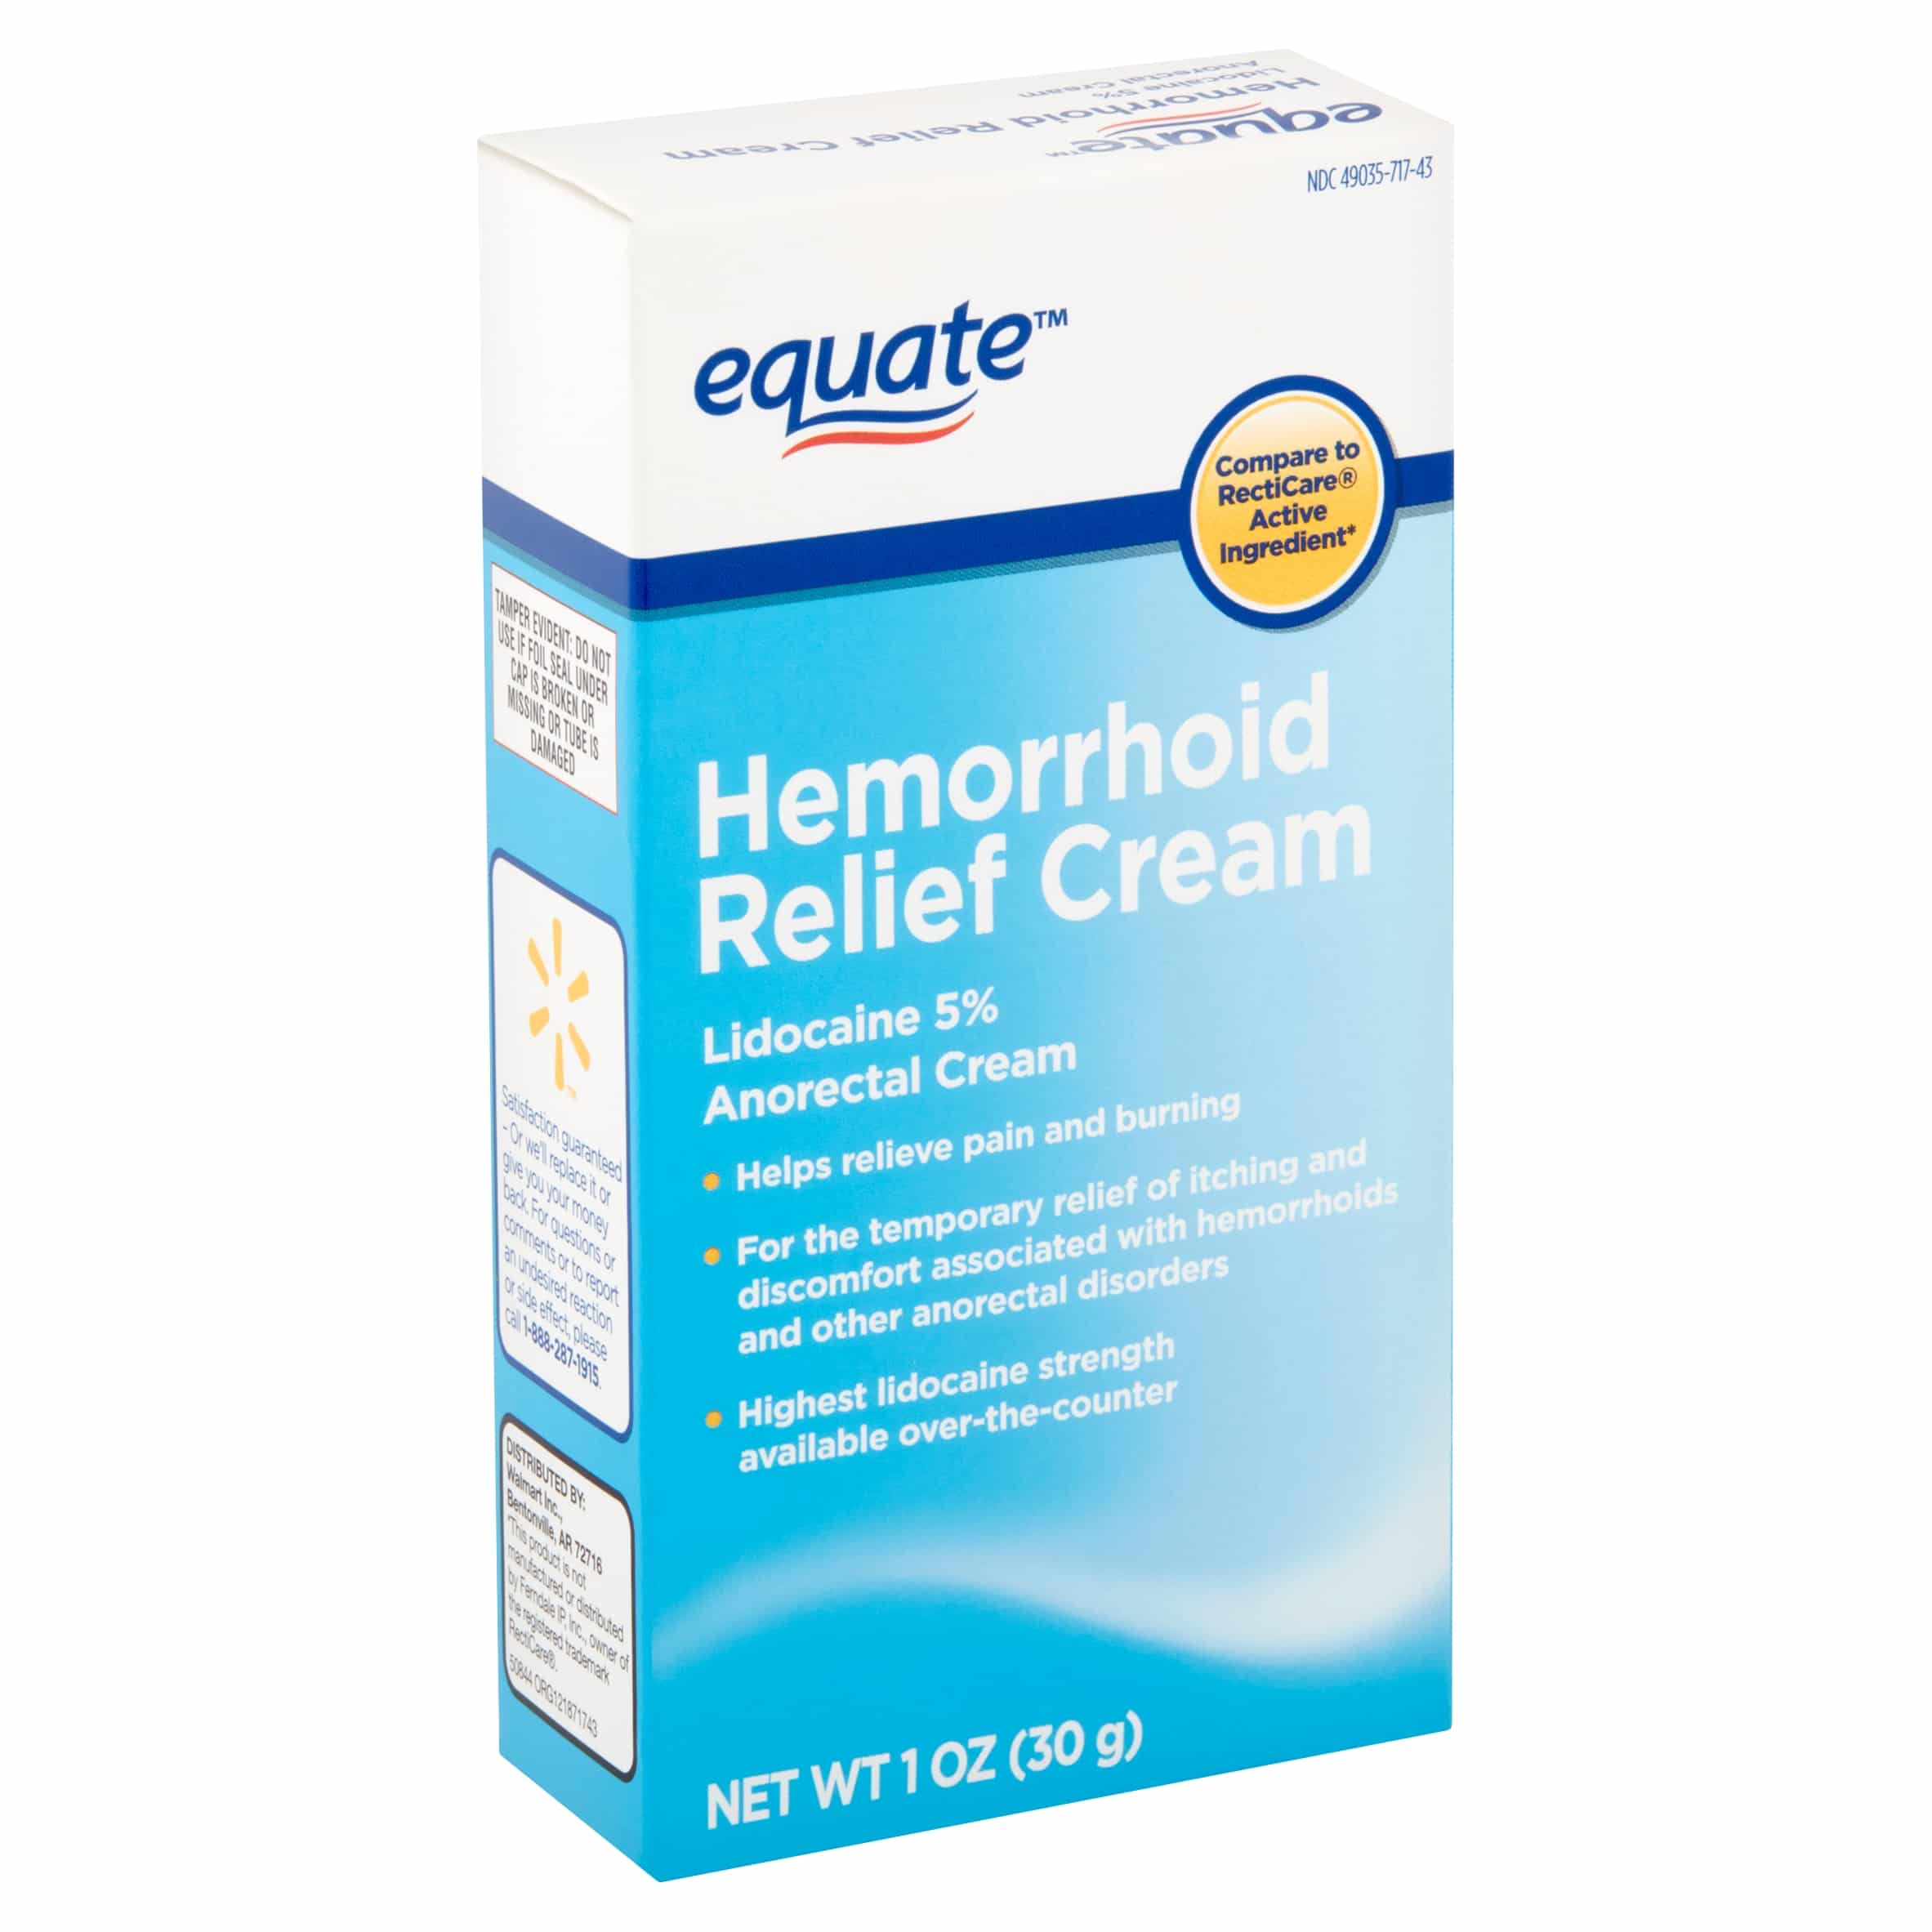 Equate Hemorrhoid Relief Cream, 1 oz